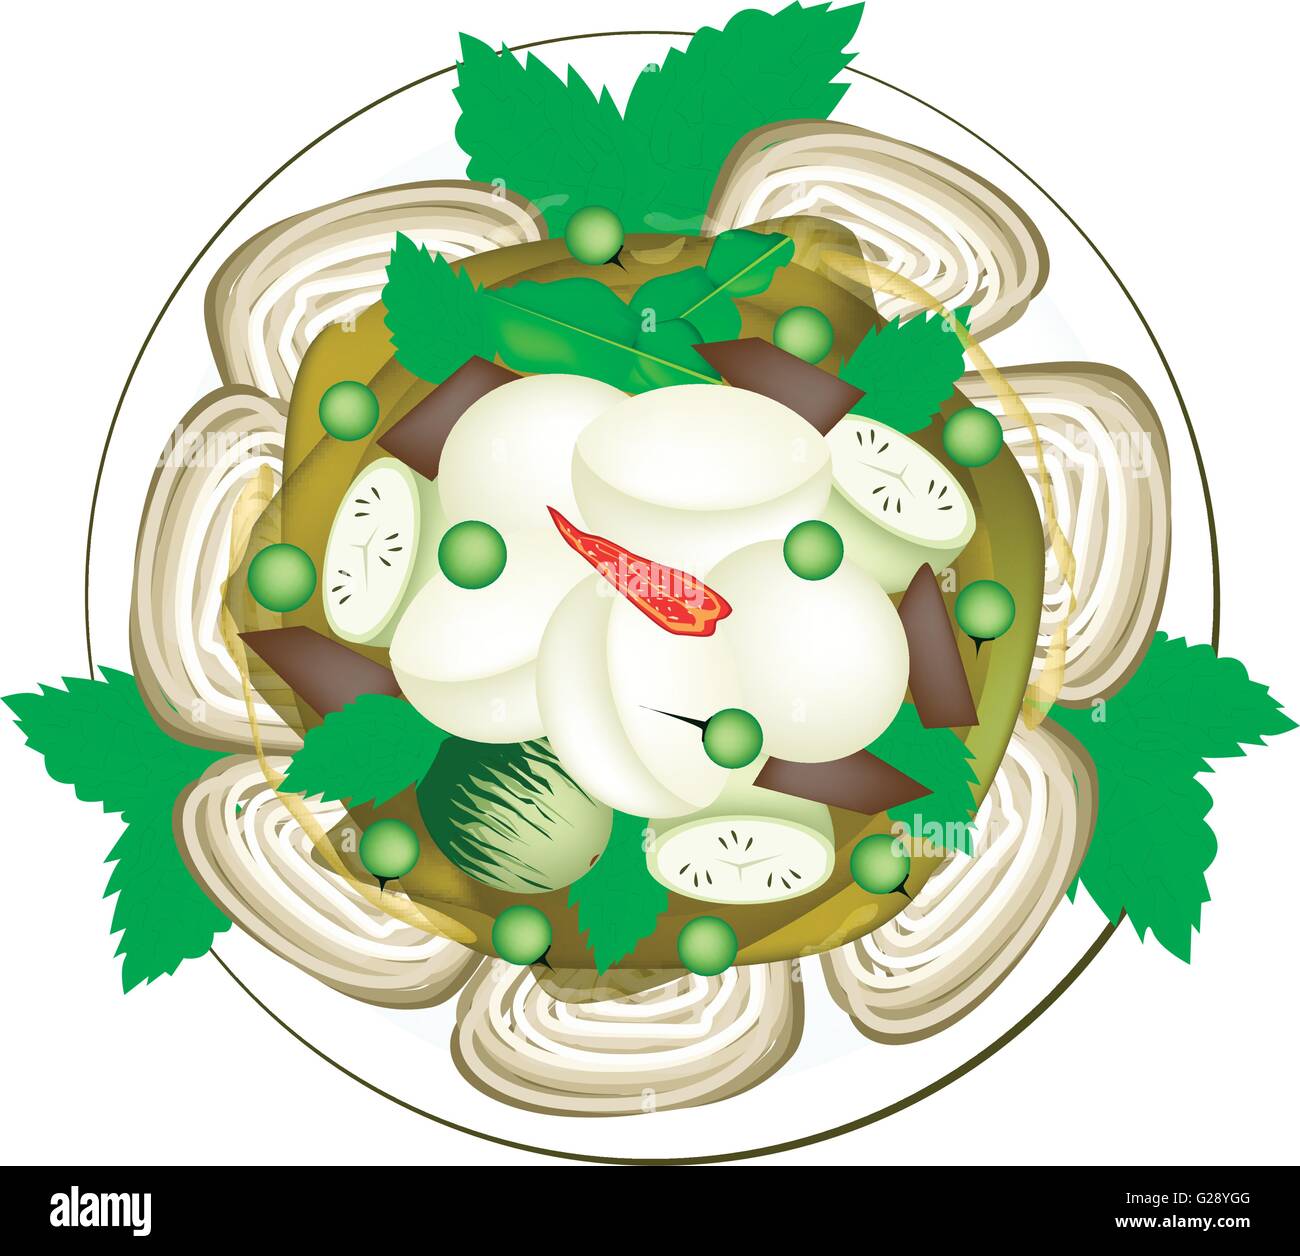 La cuisine thaï, Thaï épicé Curry vert avec des boules de poisson servi sur des vermicelles de riz, l'un des plus célèbres Recettes Curry dans le Worl Illustration de Vecteur